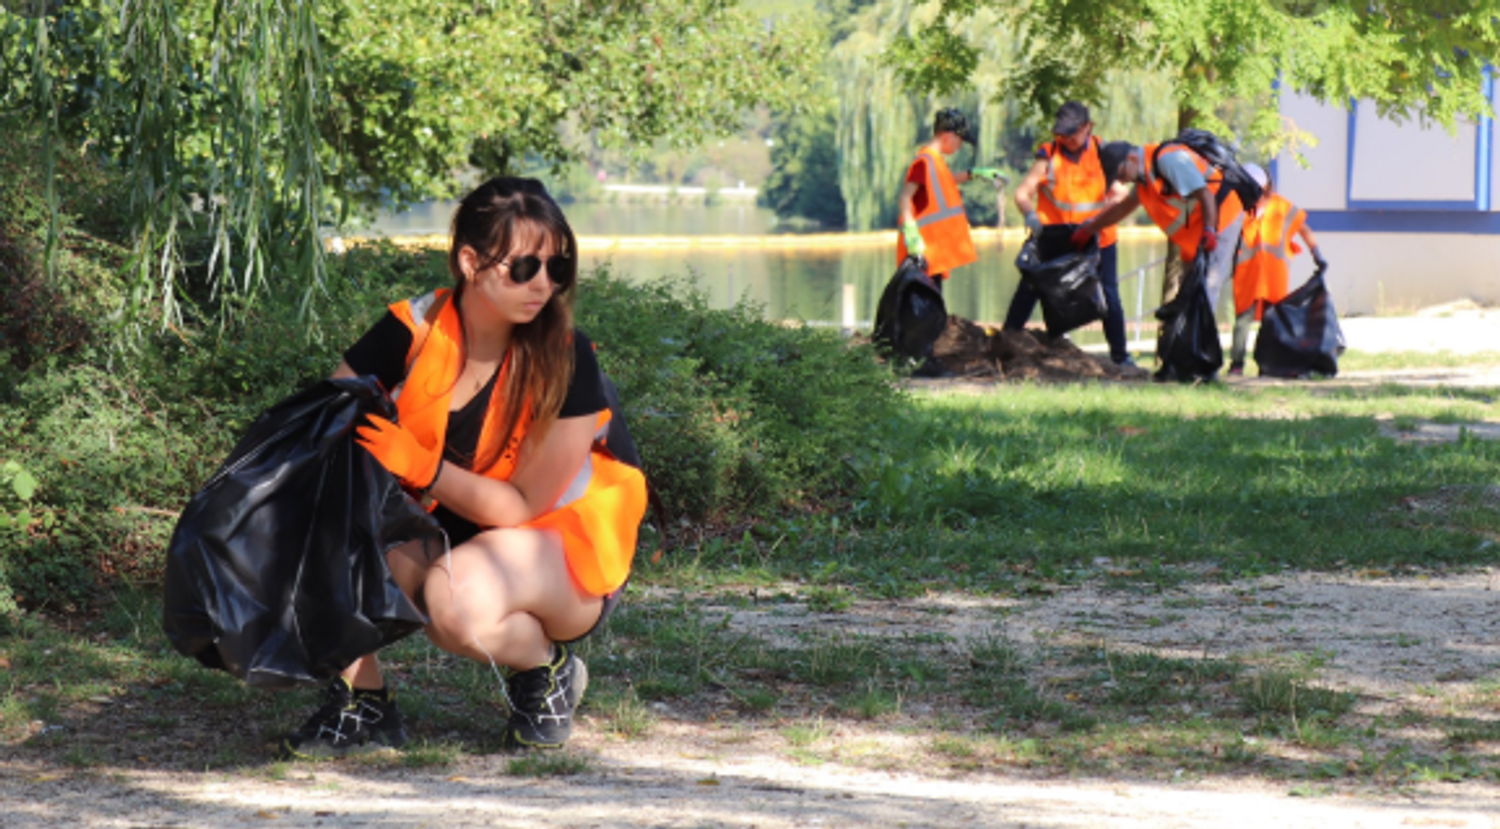 Le prochain nettoyage citoyen du lac Kir aura lieu le 29 août